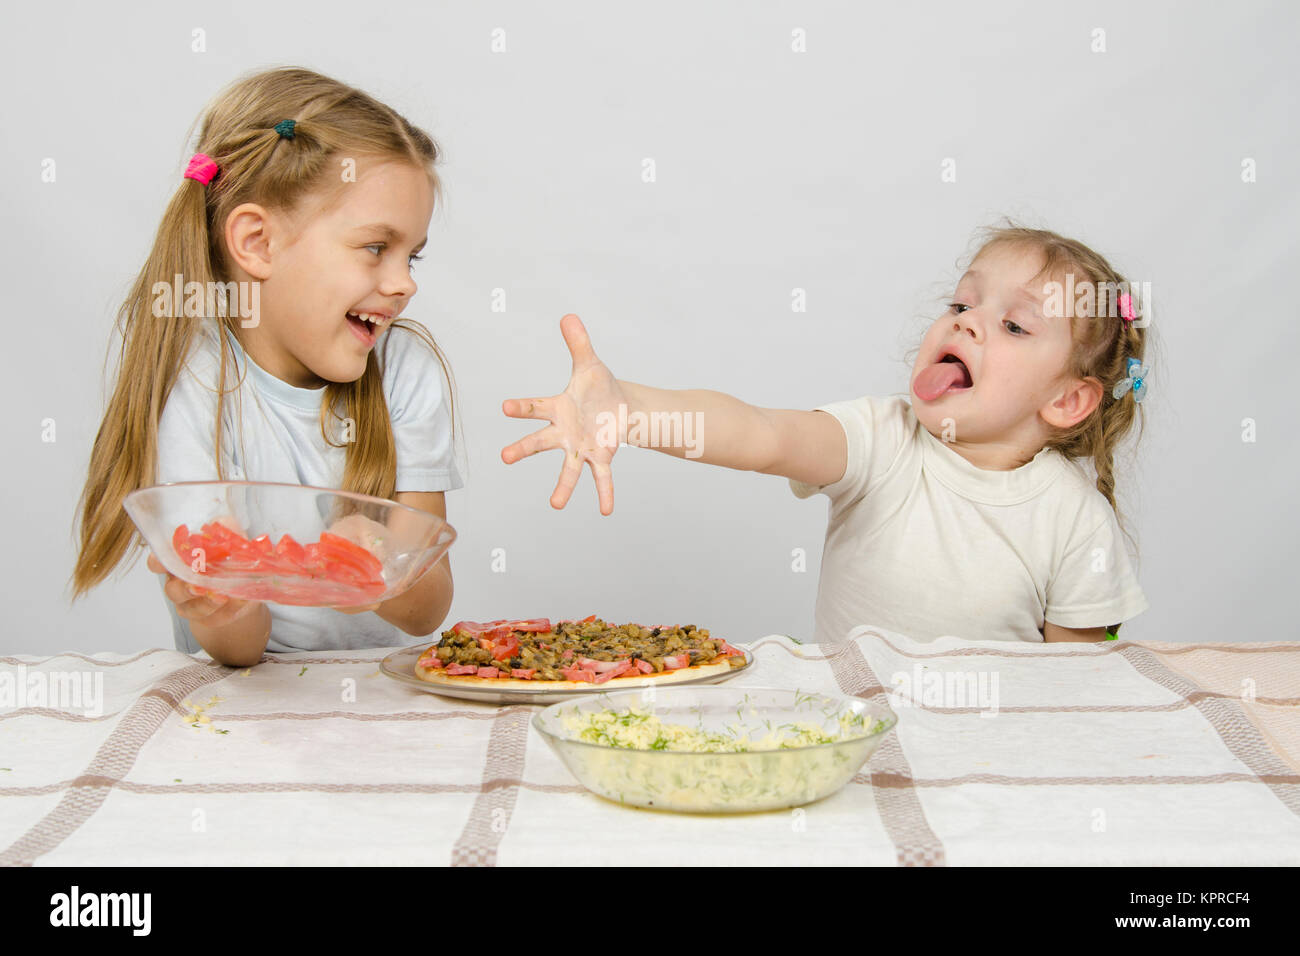 Due bambine in una tabella preparata la pizza. Uno con una bizzarra vista si allunga una mano per una piastra con pomodori, che prende gli altri con un sorriso Foto Stock